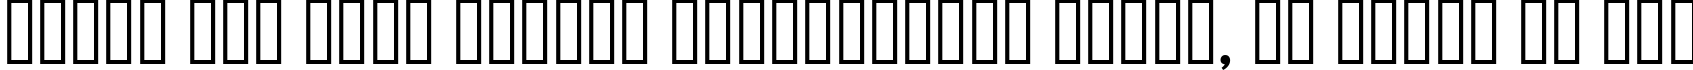 Пример написания шрифтом MGI Archon   DemiBold текста на русском